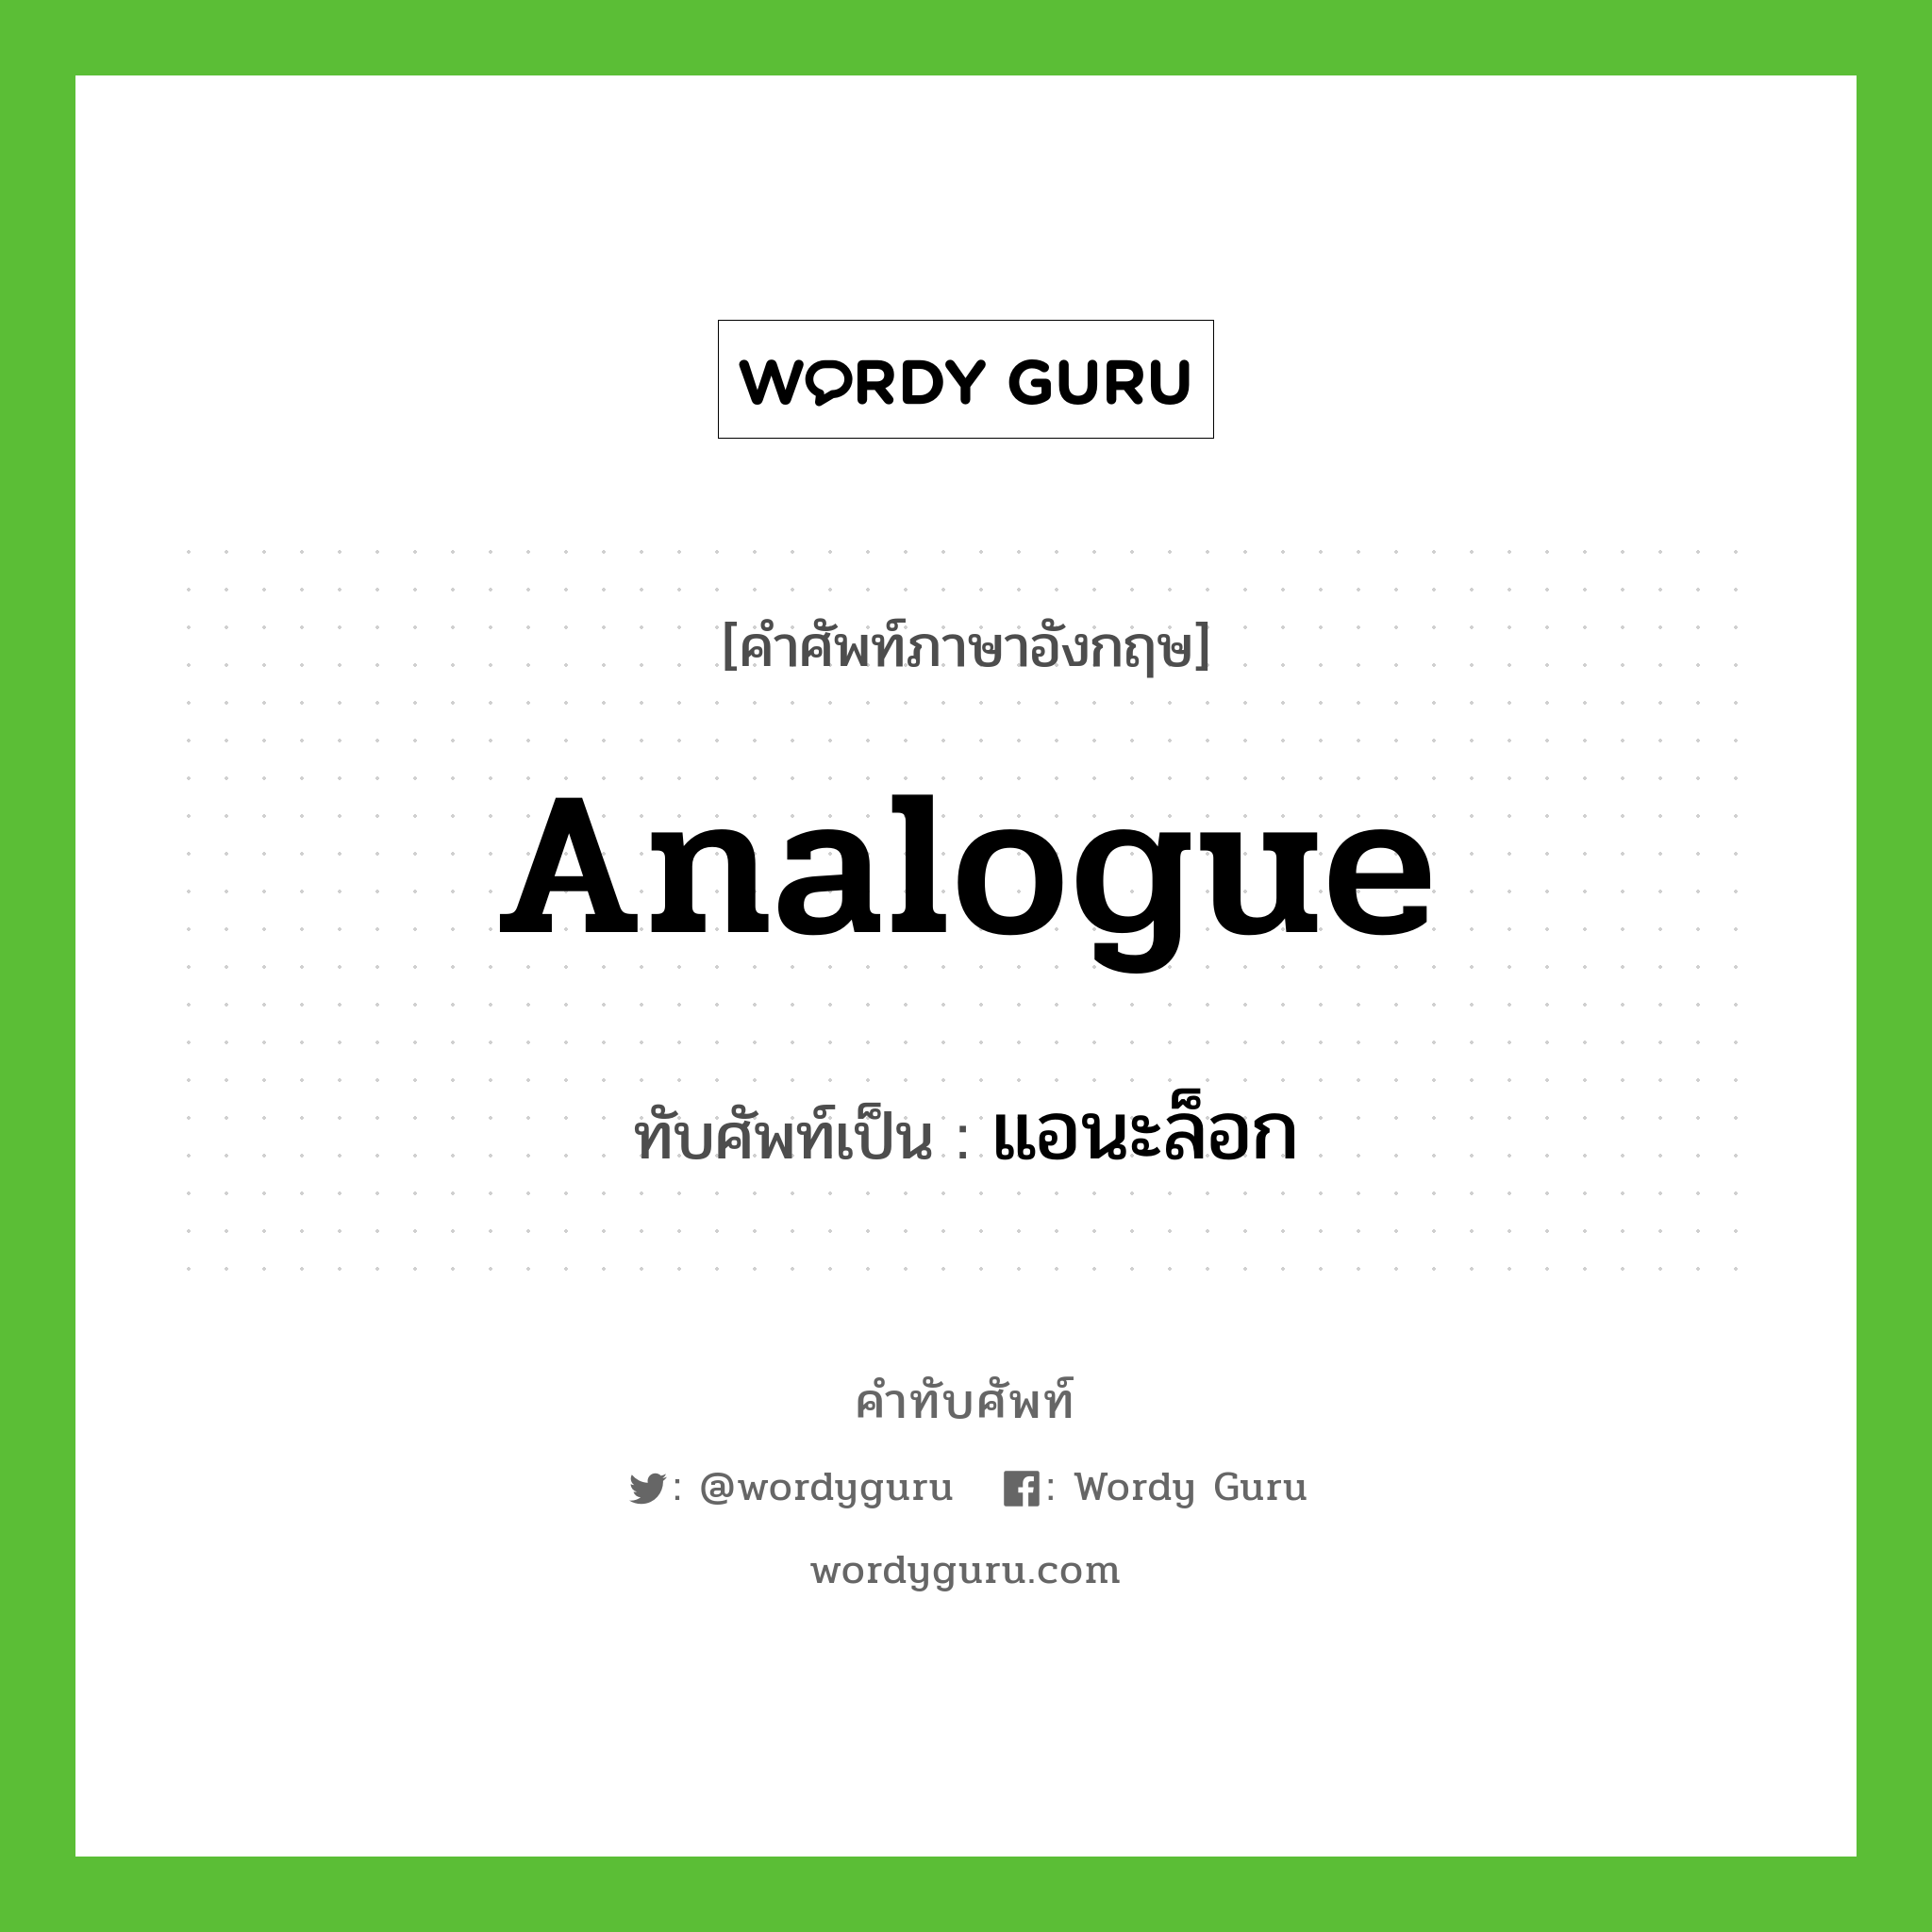 analogue เขียนเป็นคำไทยว่าอะไร?, คำศัพท์ภาษาอังกฤษ analogue ทับศัพท์เป็น แอนะล็อก